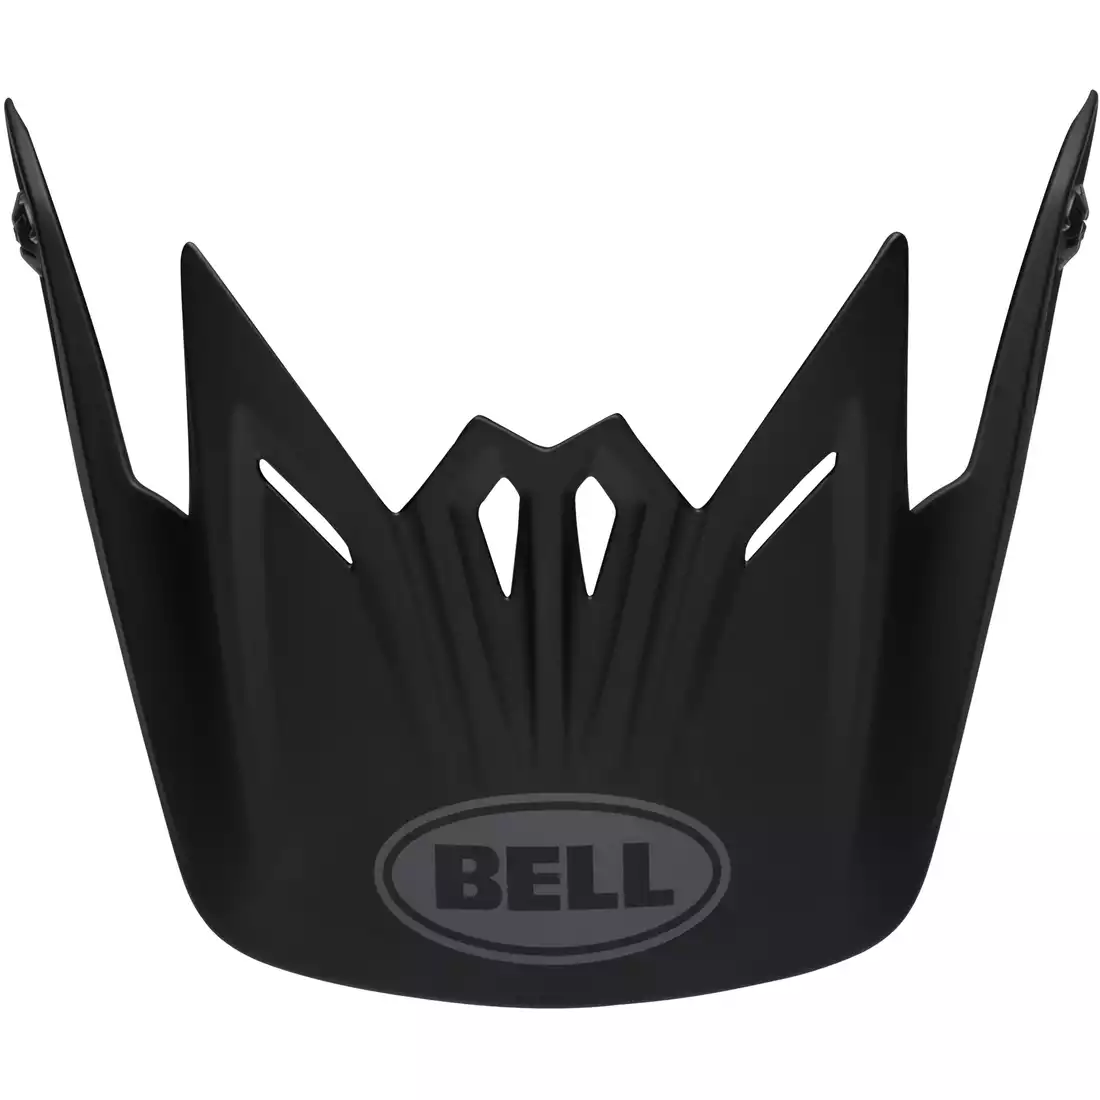 BELL visor for the FULL-9/FULL-9 FUSION bicycle helmet, black